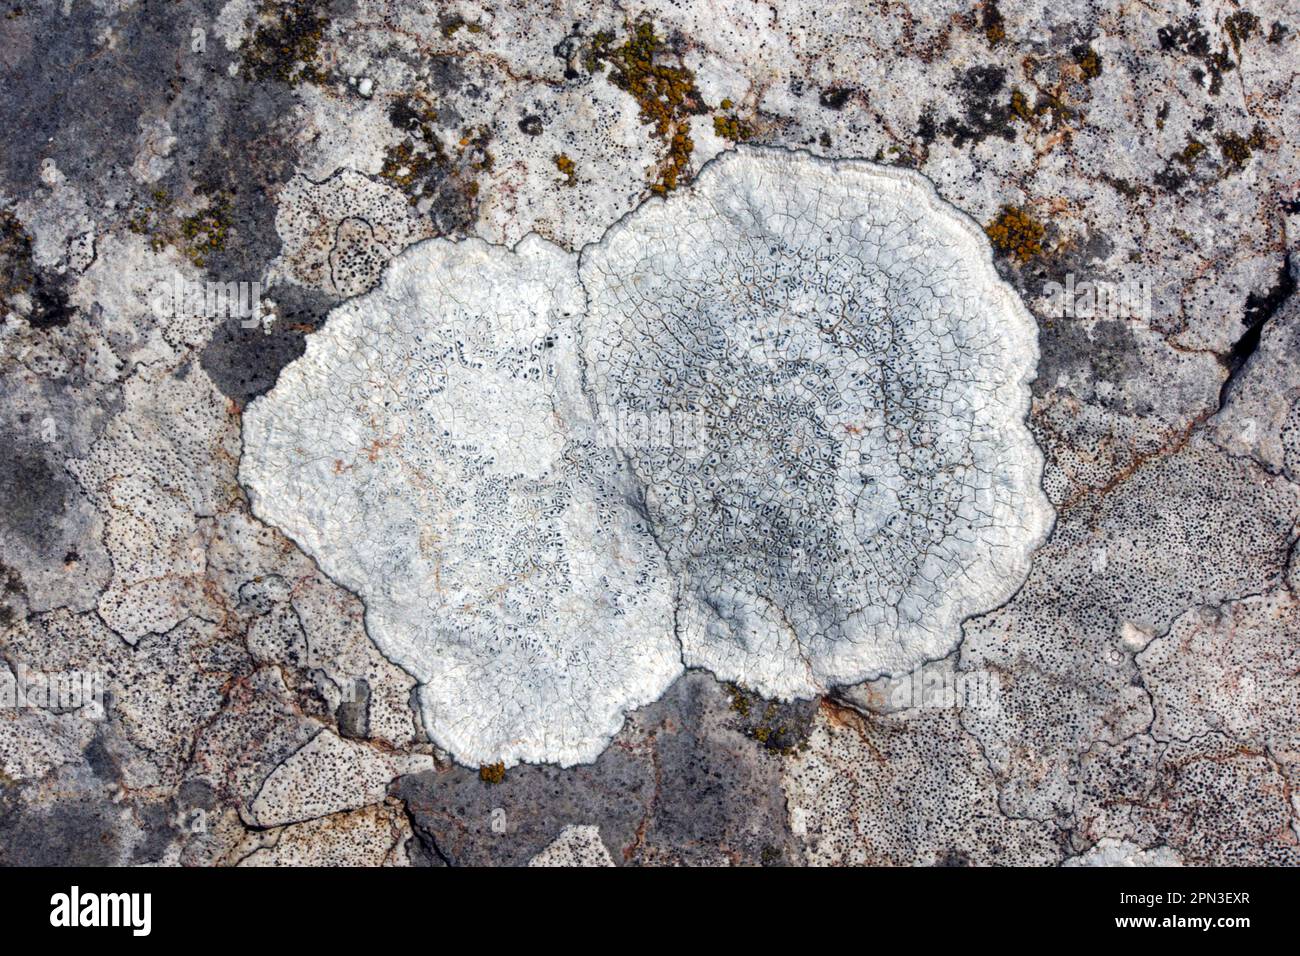 Aspicilia calcarea is a common crustose lichen found on limestone including gravestones. It has a global distribution. Stock Photo